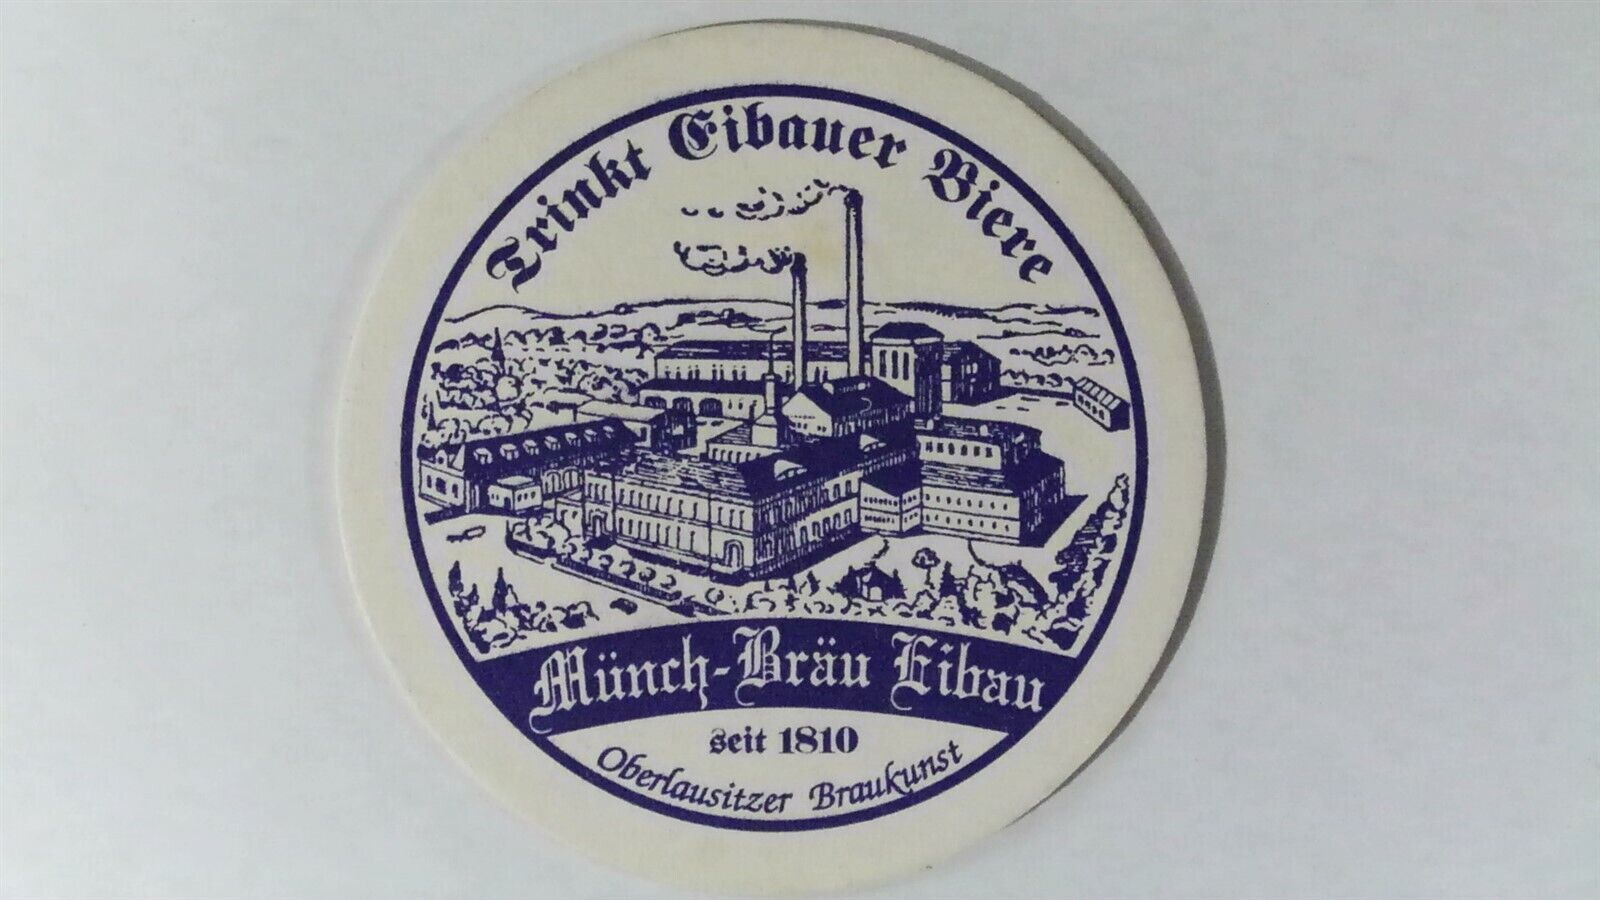 Eibauer Beer Coaster, Munch-Brau Eibau